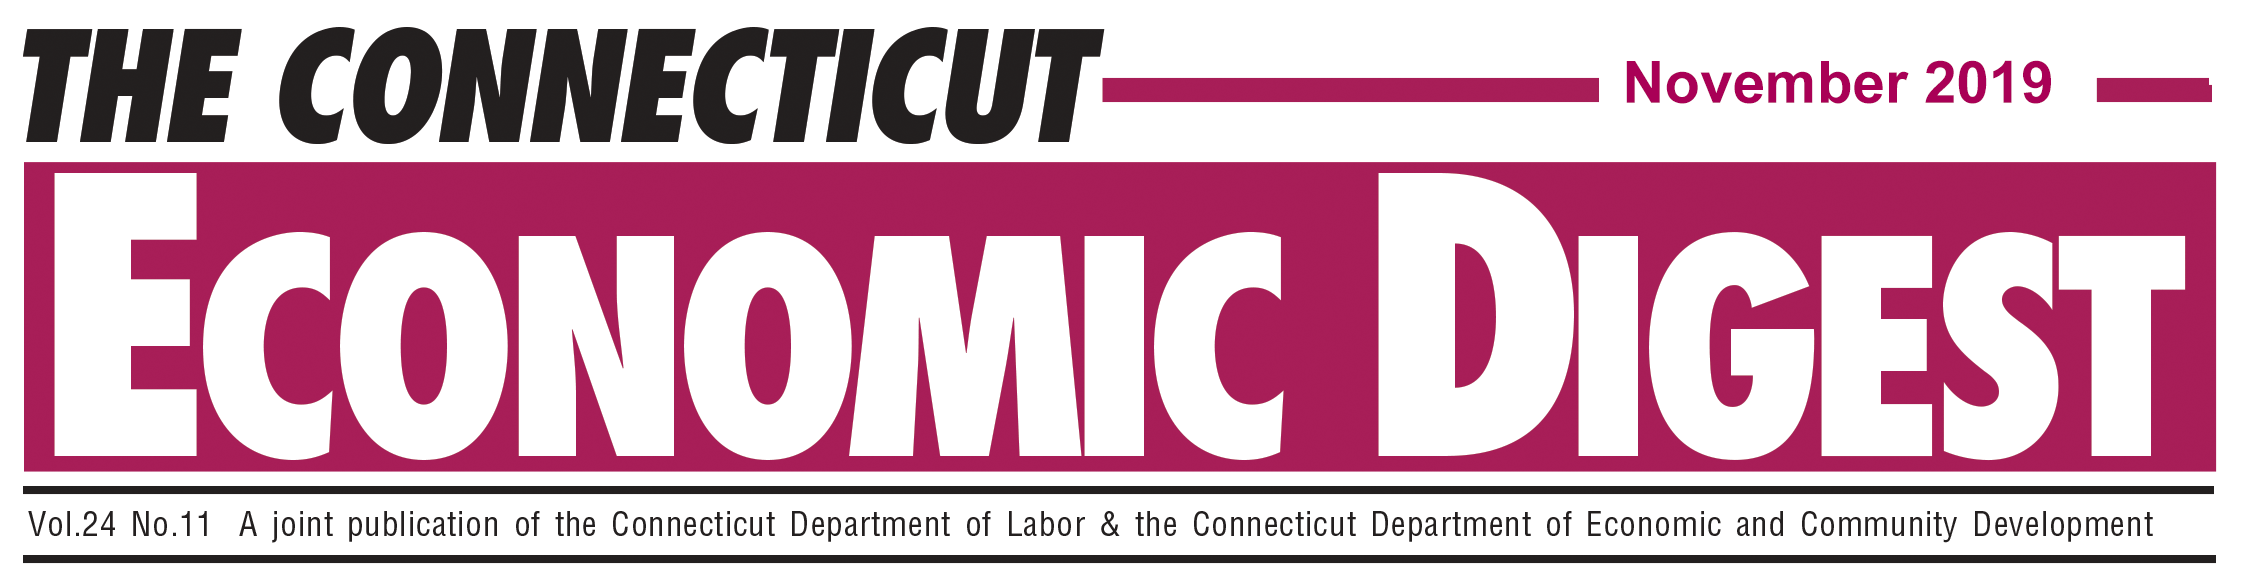 November 2019 Connecticut Economic Digest